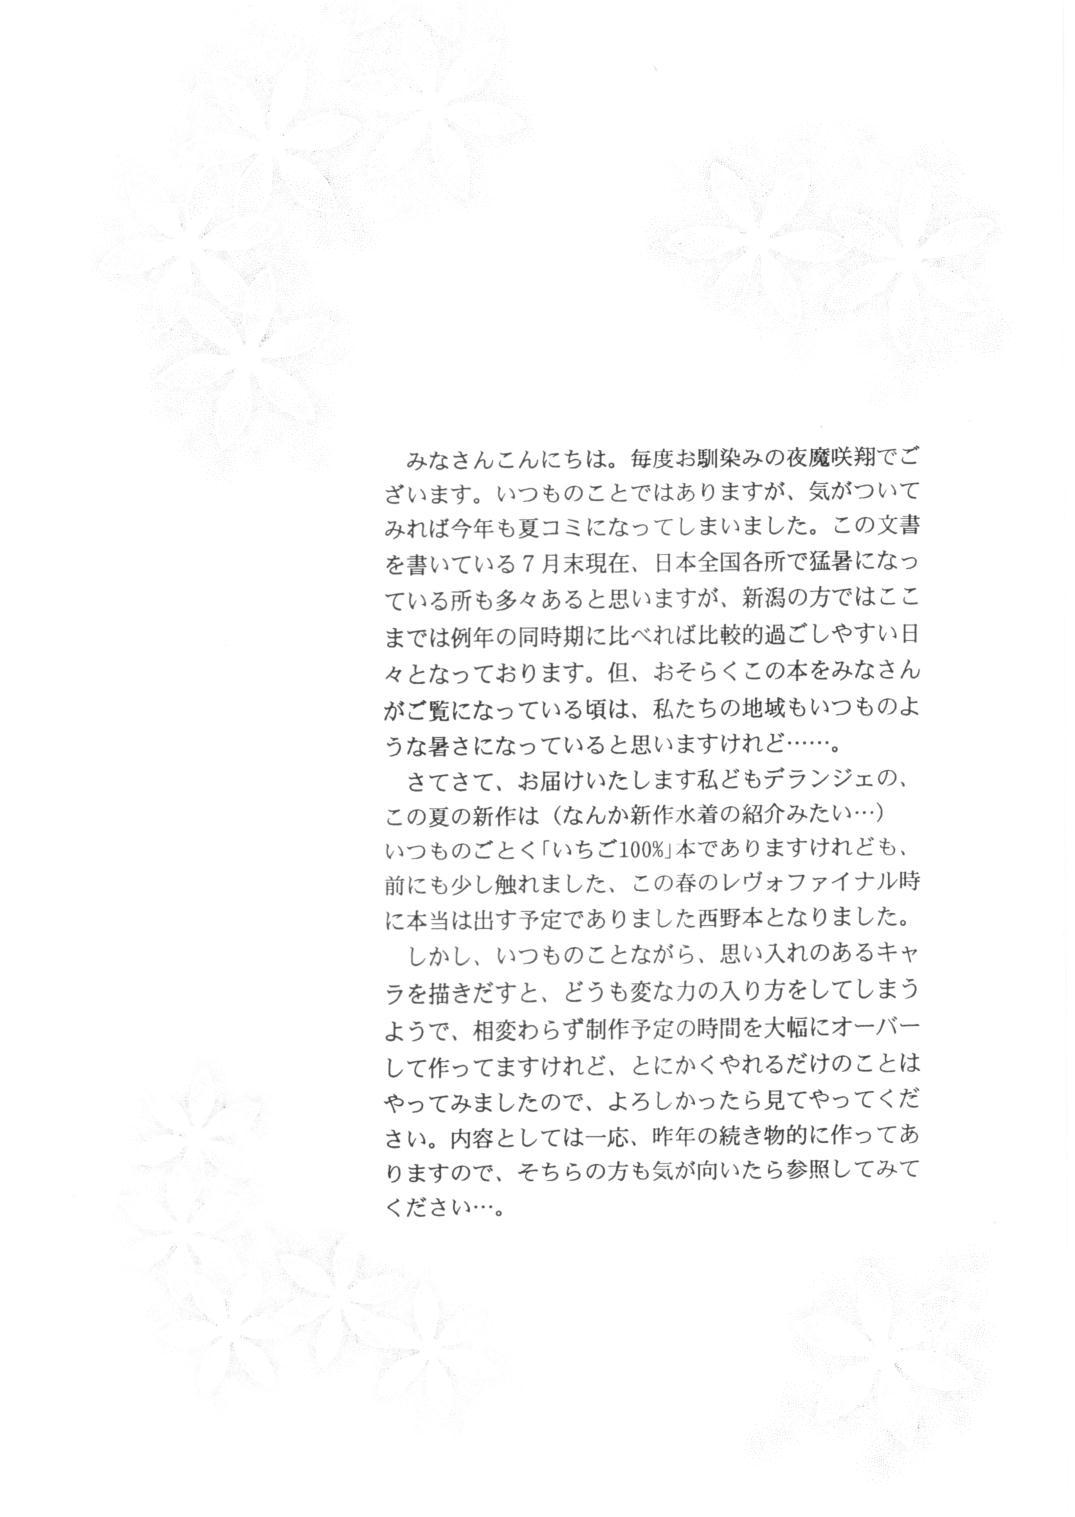 Real Couple ICHIGO ∞% -2 SECOND RELATION - Ichigo 100 Passion - Page 3